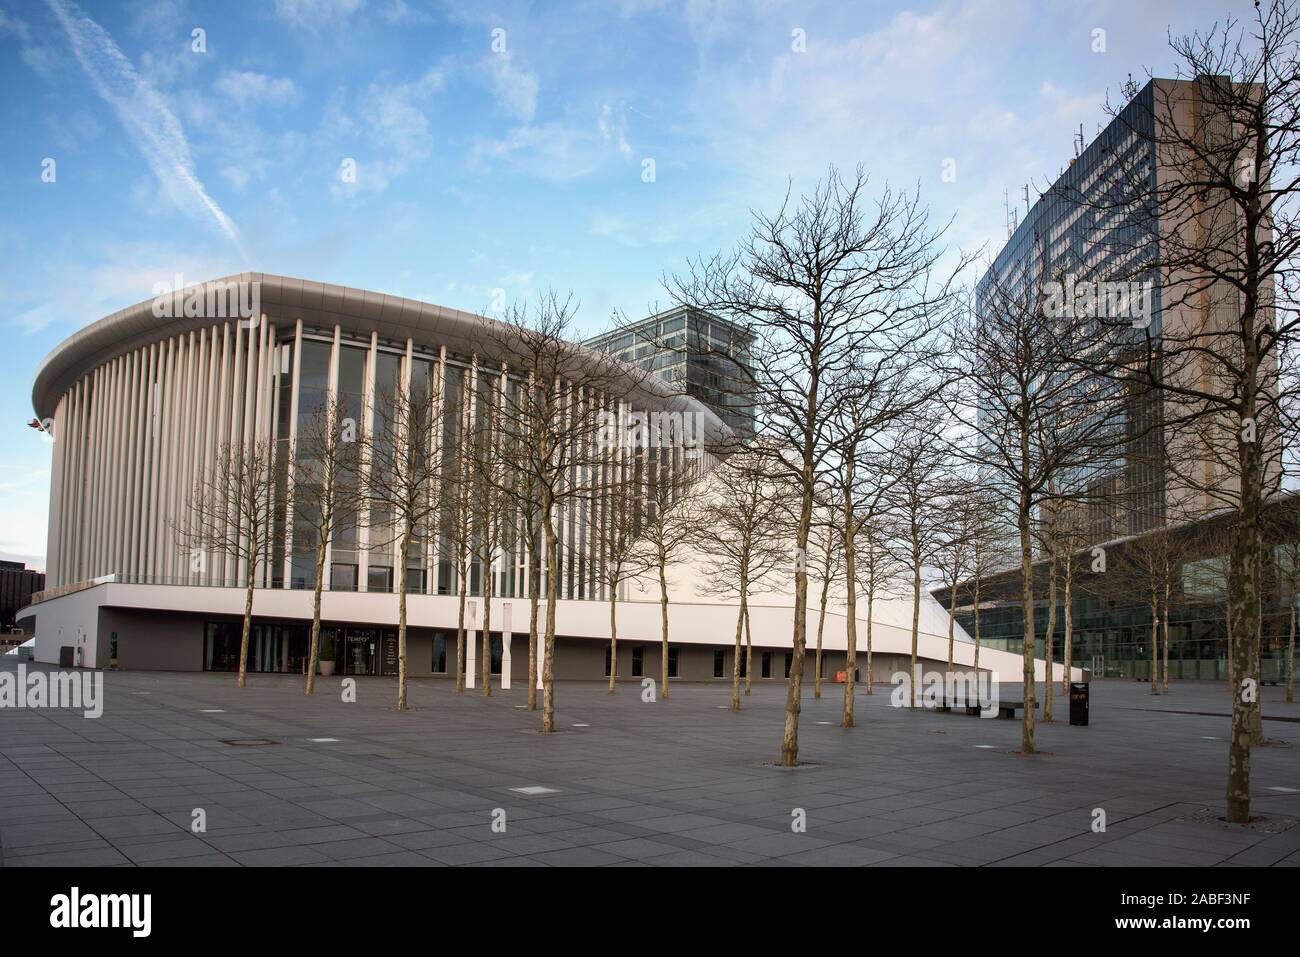 La Ville de Luxembourg, Luxembourg : janvier 19, 2018 : une vue de la Salle de Concerts Grande-Duchesse Joséphine-Charlotte, également connu sous le nom de Philharmonie Luxembourg, Banque D'Images